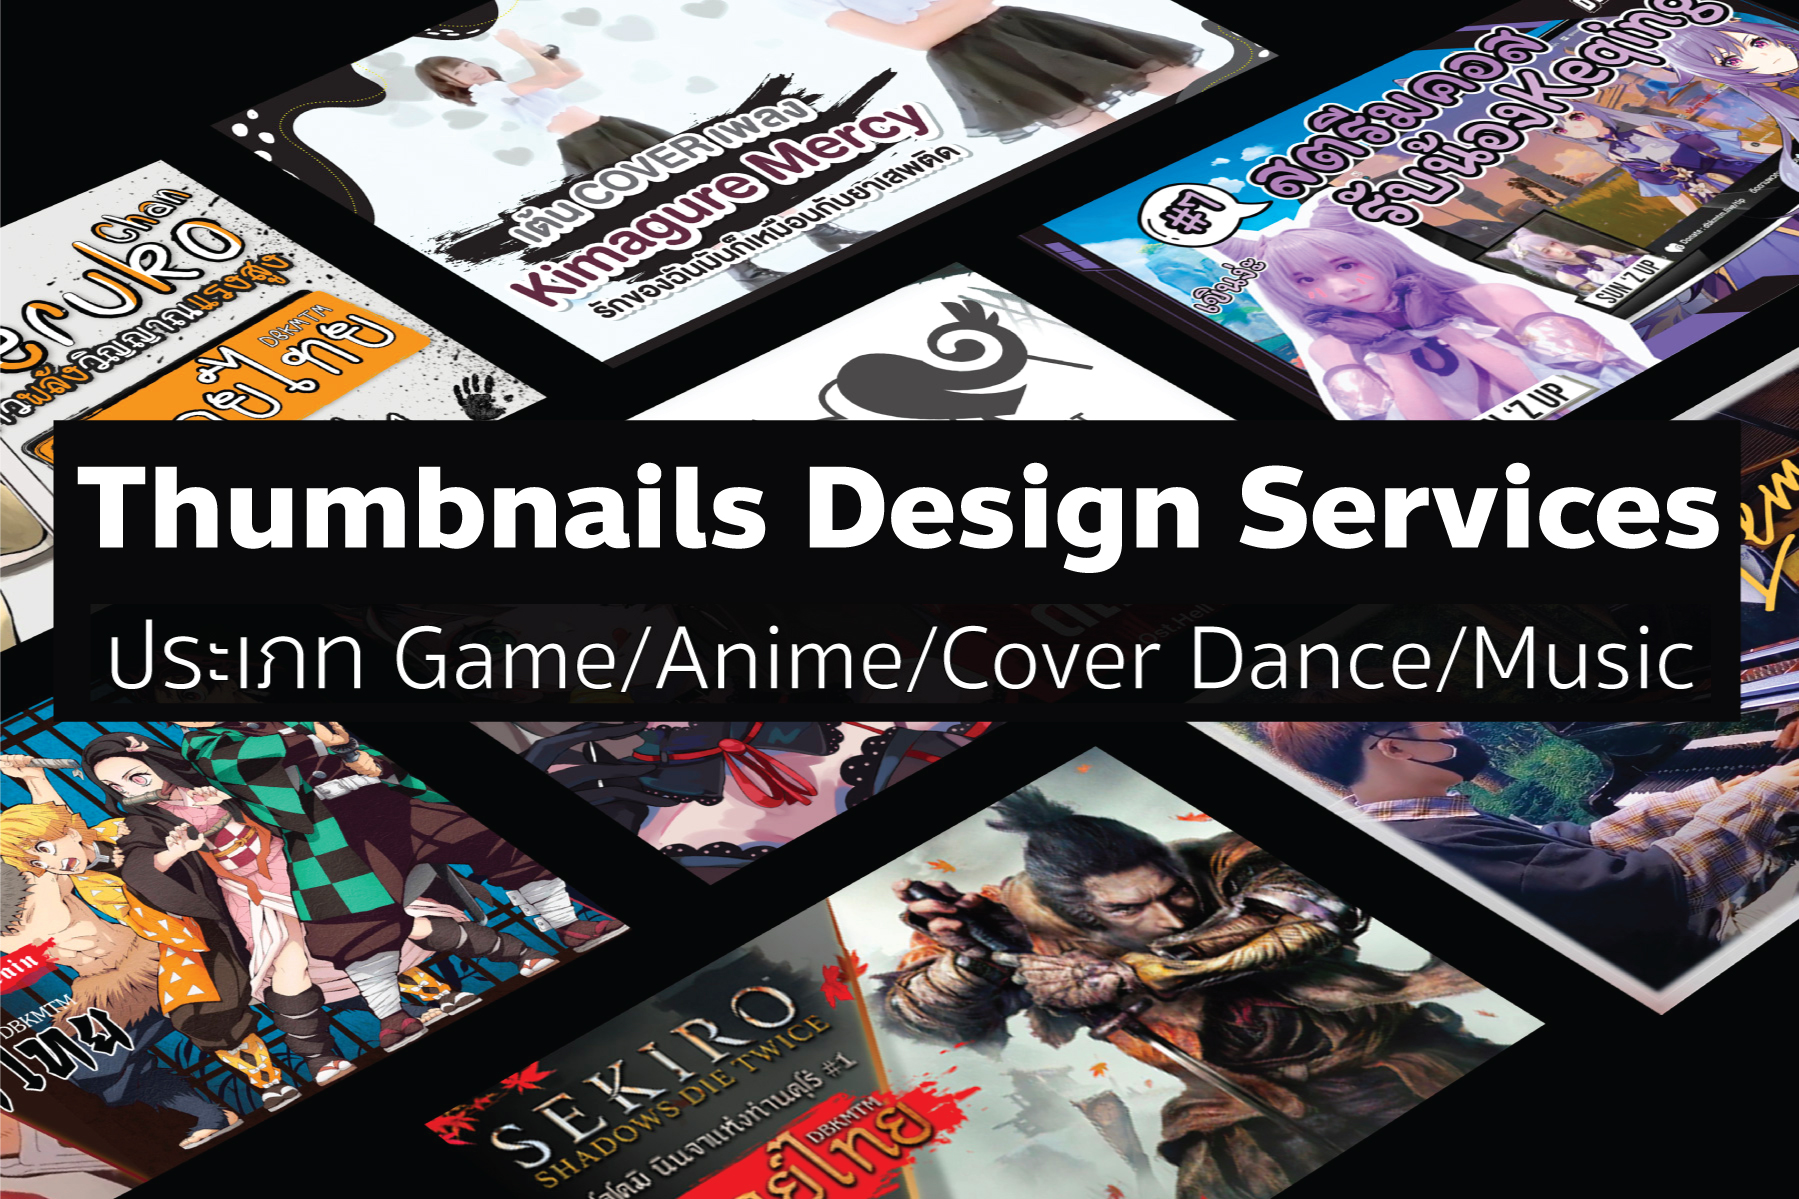 Thumbnails Design Services รับทำปกคลิป